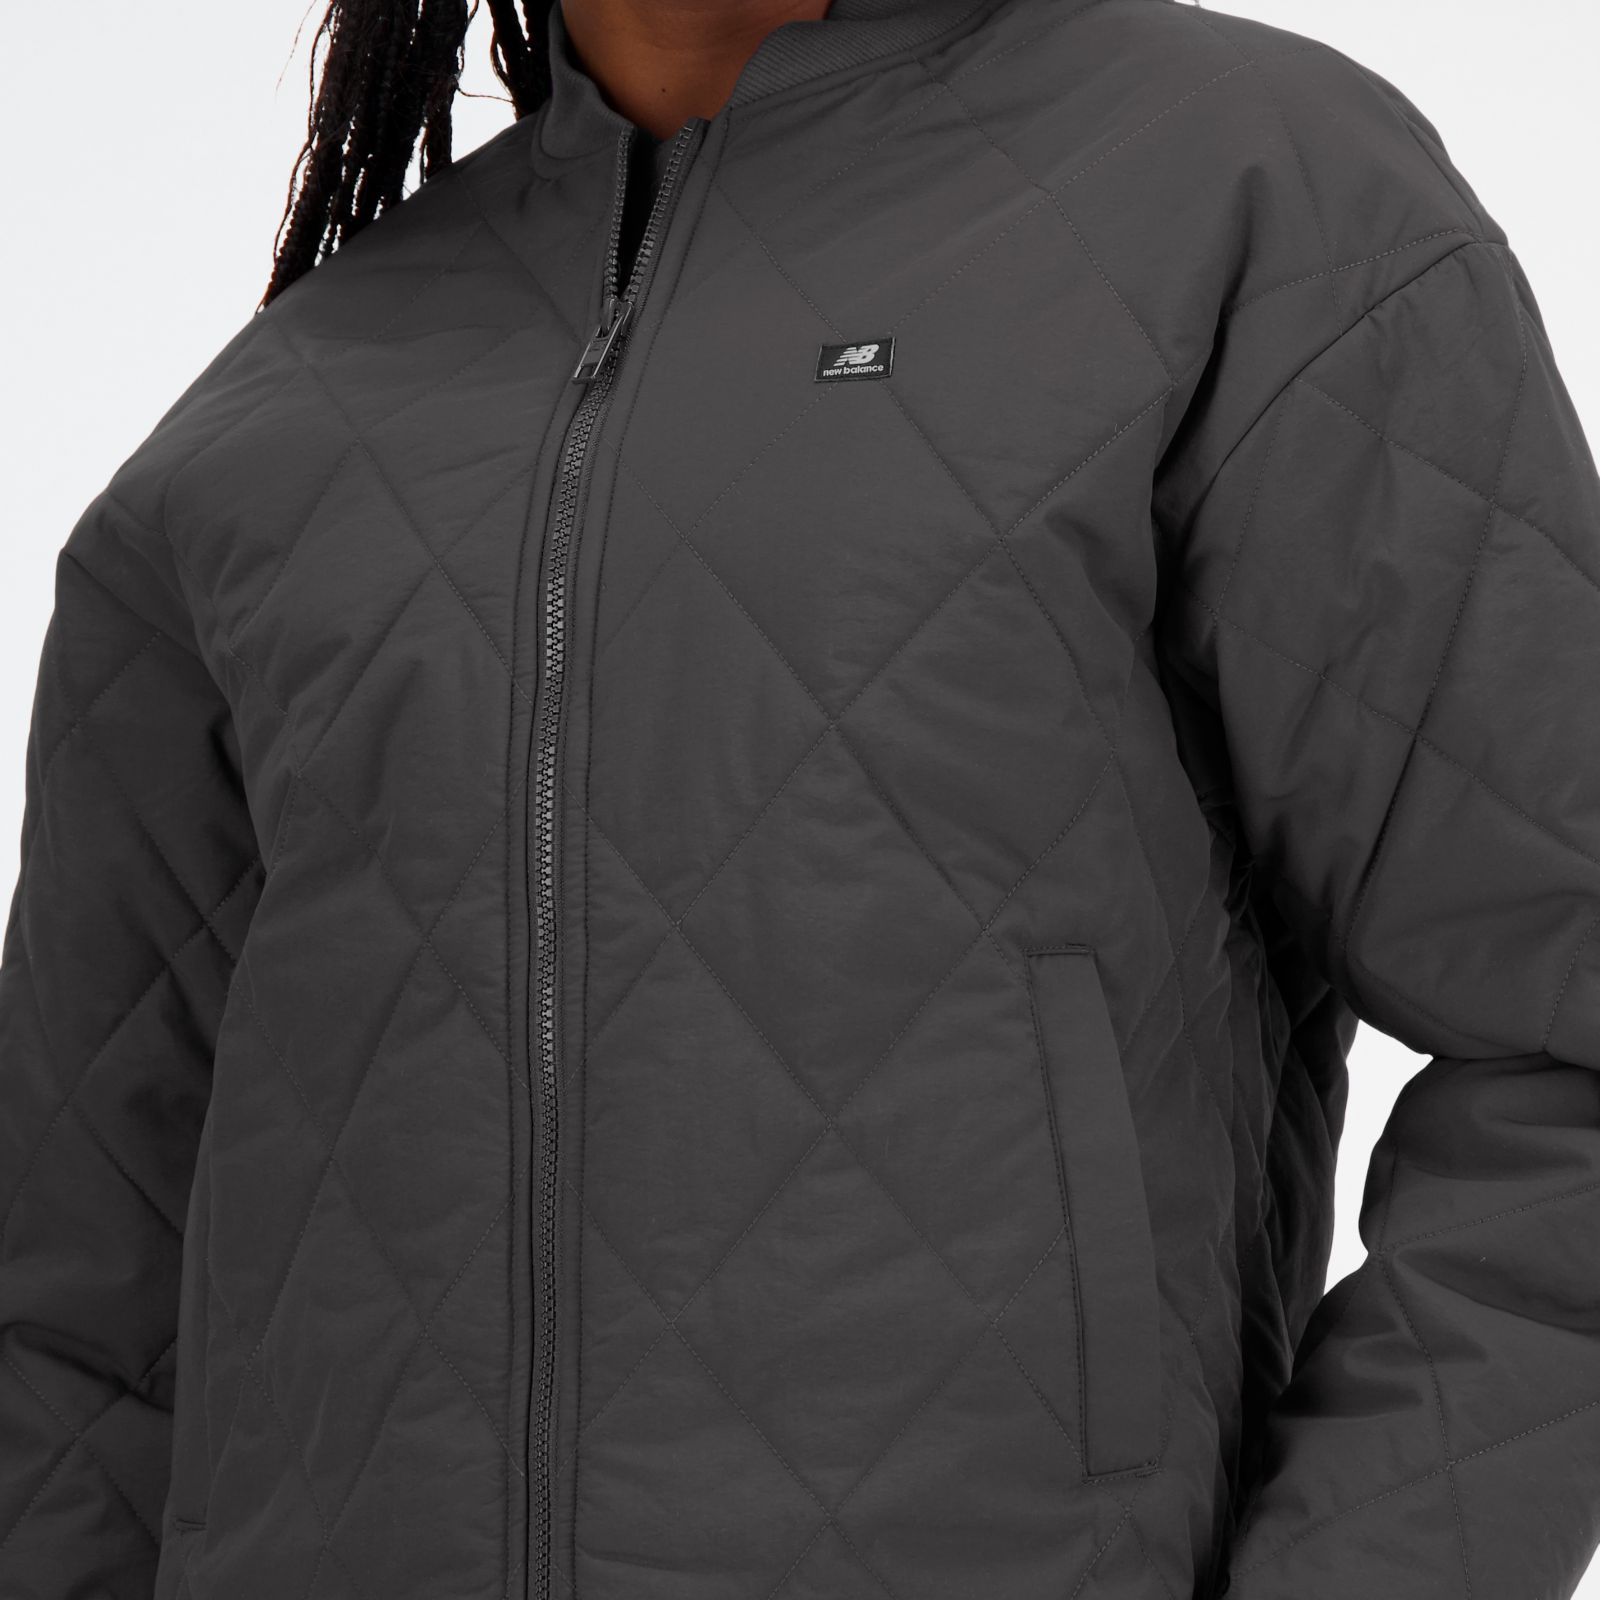 New Balance Full Zip Gray & White Herringbone Fleece Sweater Jacket,Women  Size S